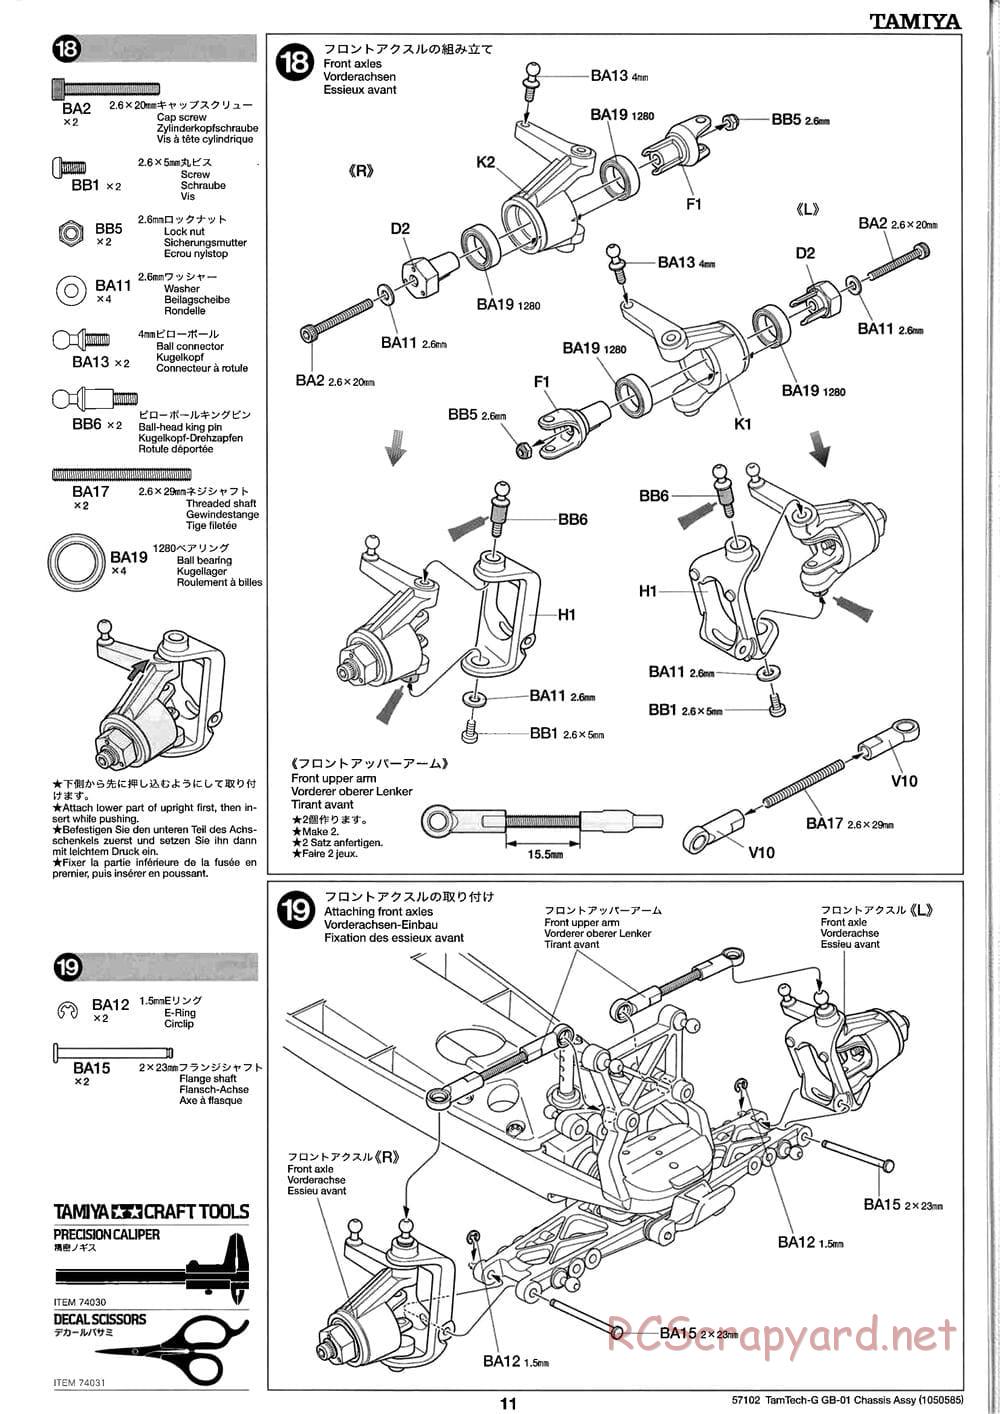 Tamiya - GB-01 Chassis - Manual - Page 11